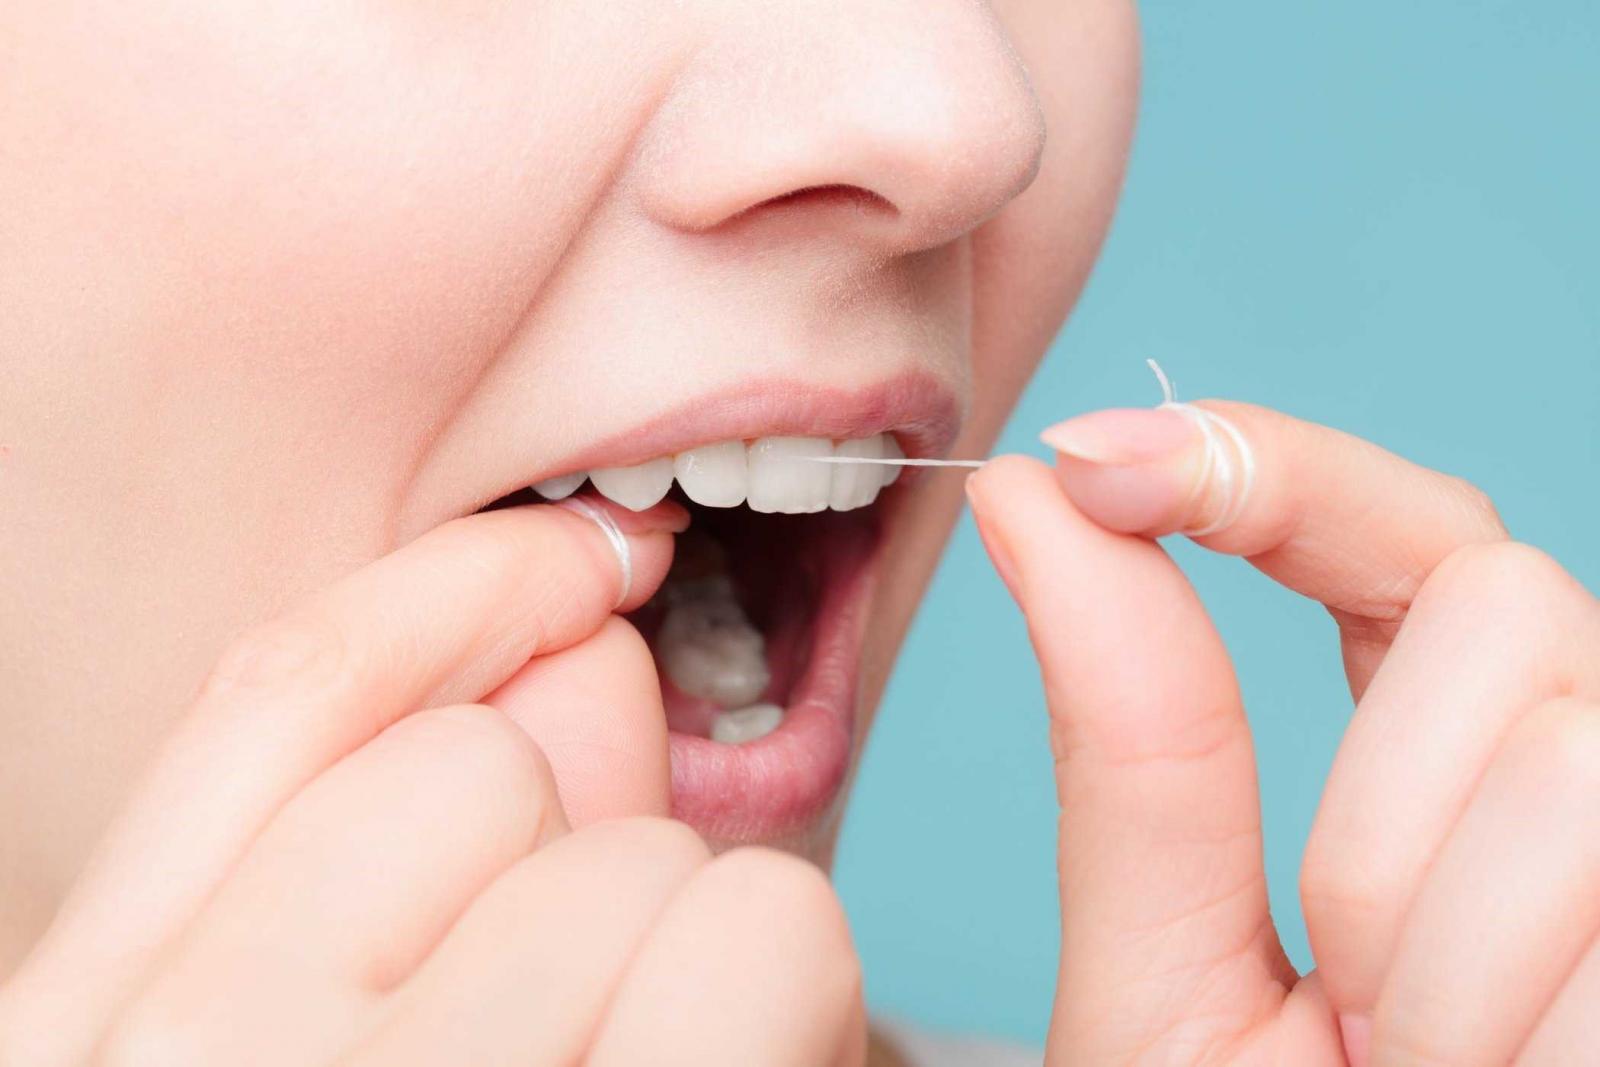 Những sai lầm nghiêm trọng cần tránh trong chăm sóc răng miệng - Ảnh 3.